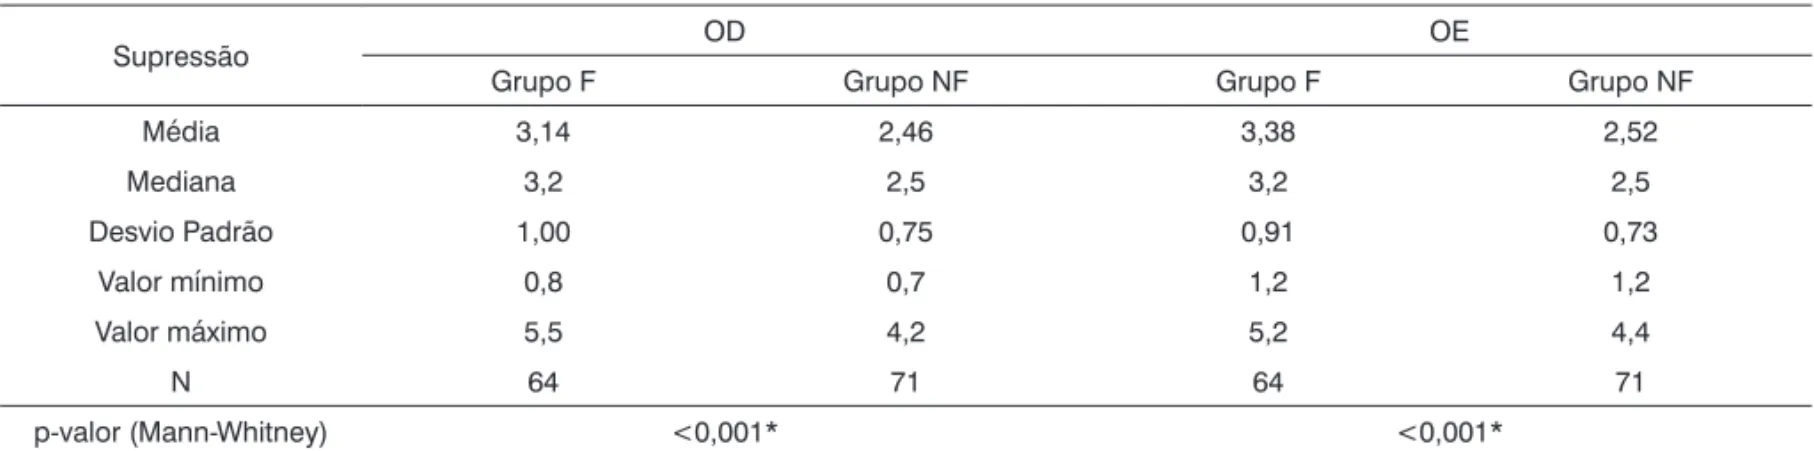 Tabela 6.  Valores médios da supressão na orelha direita e na orelha esquerda comparando os grupos de fumantes (F) e de não fumantes  (NF).